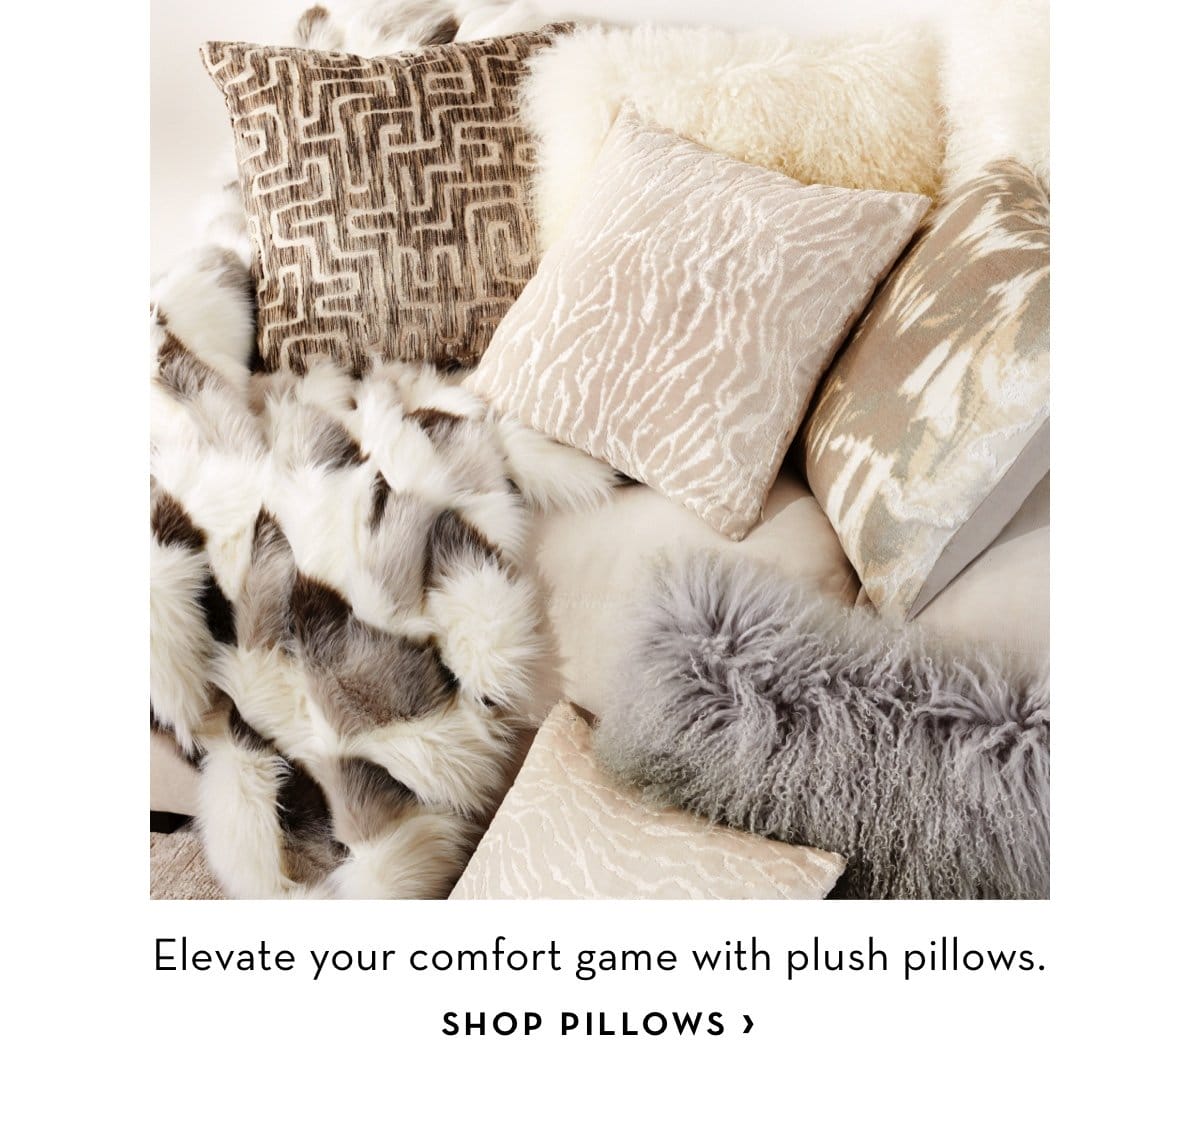 shop pillows